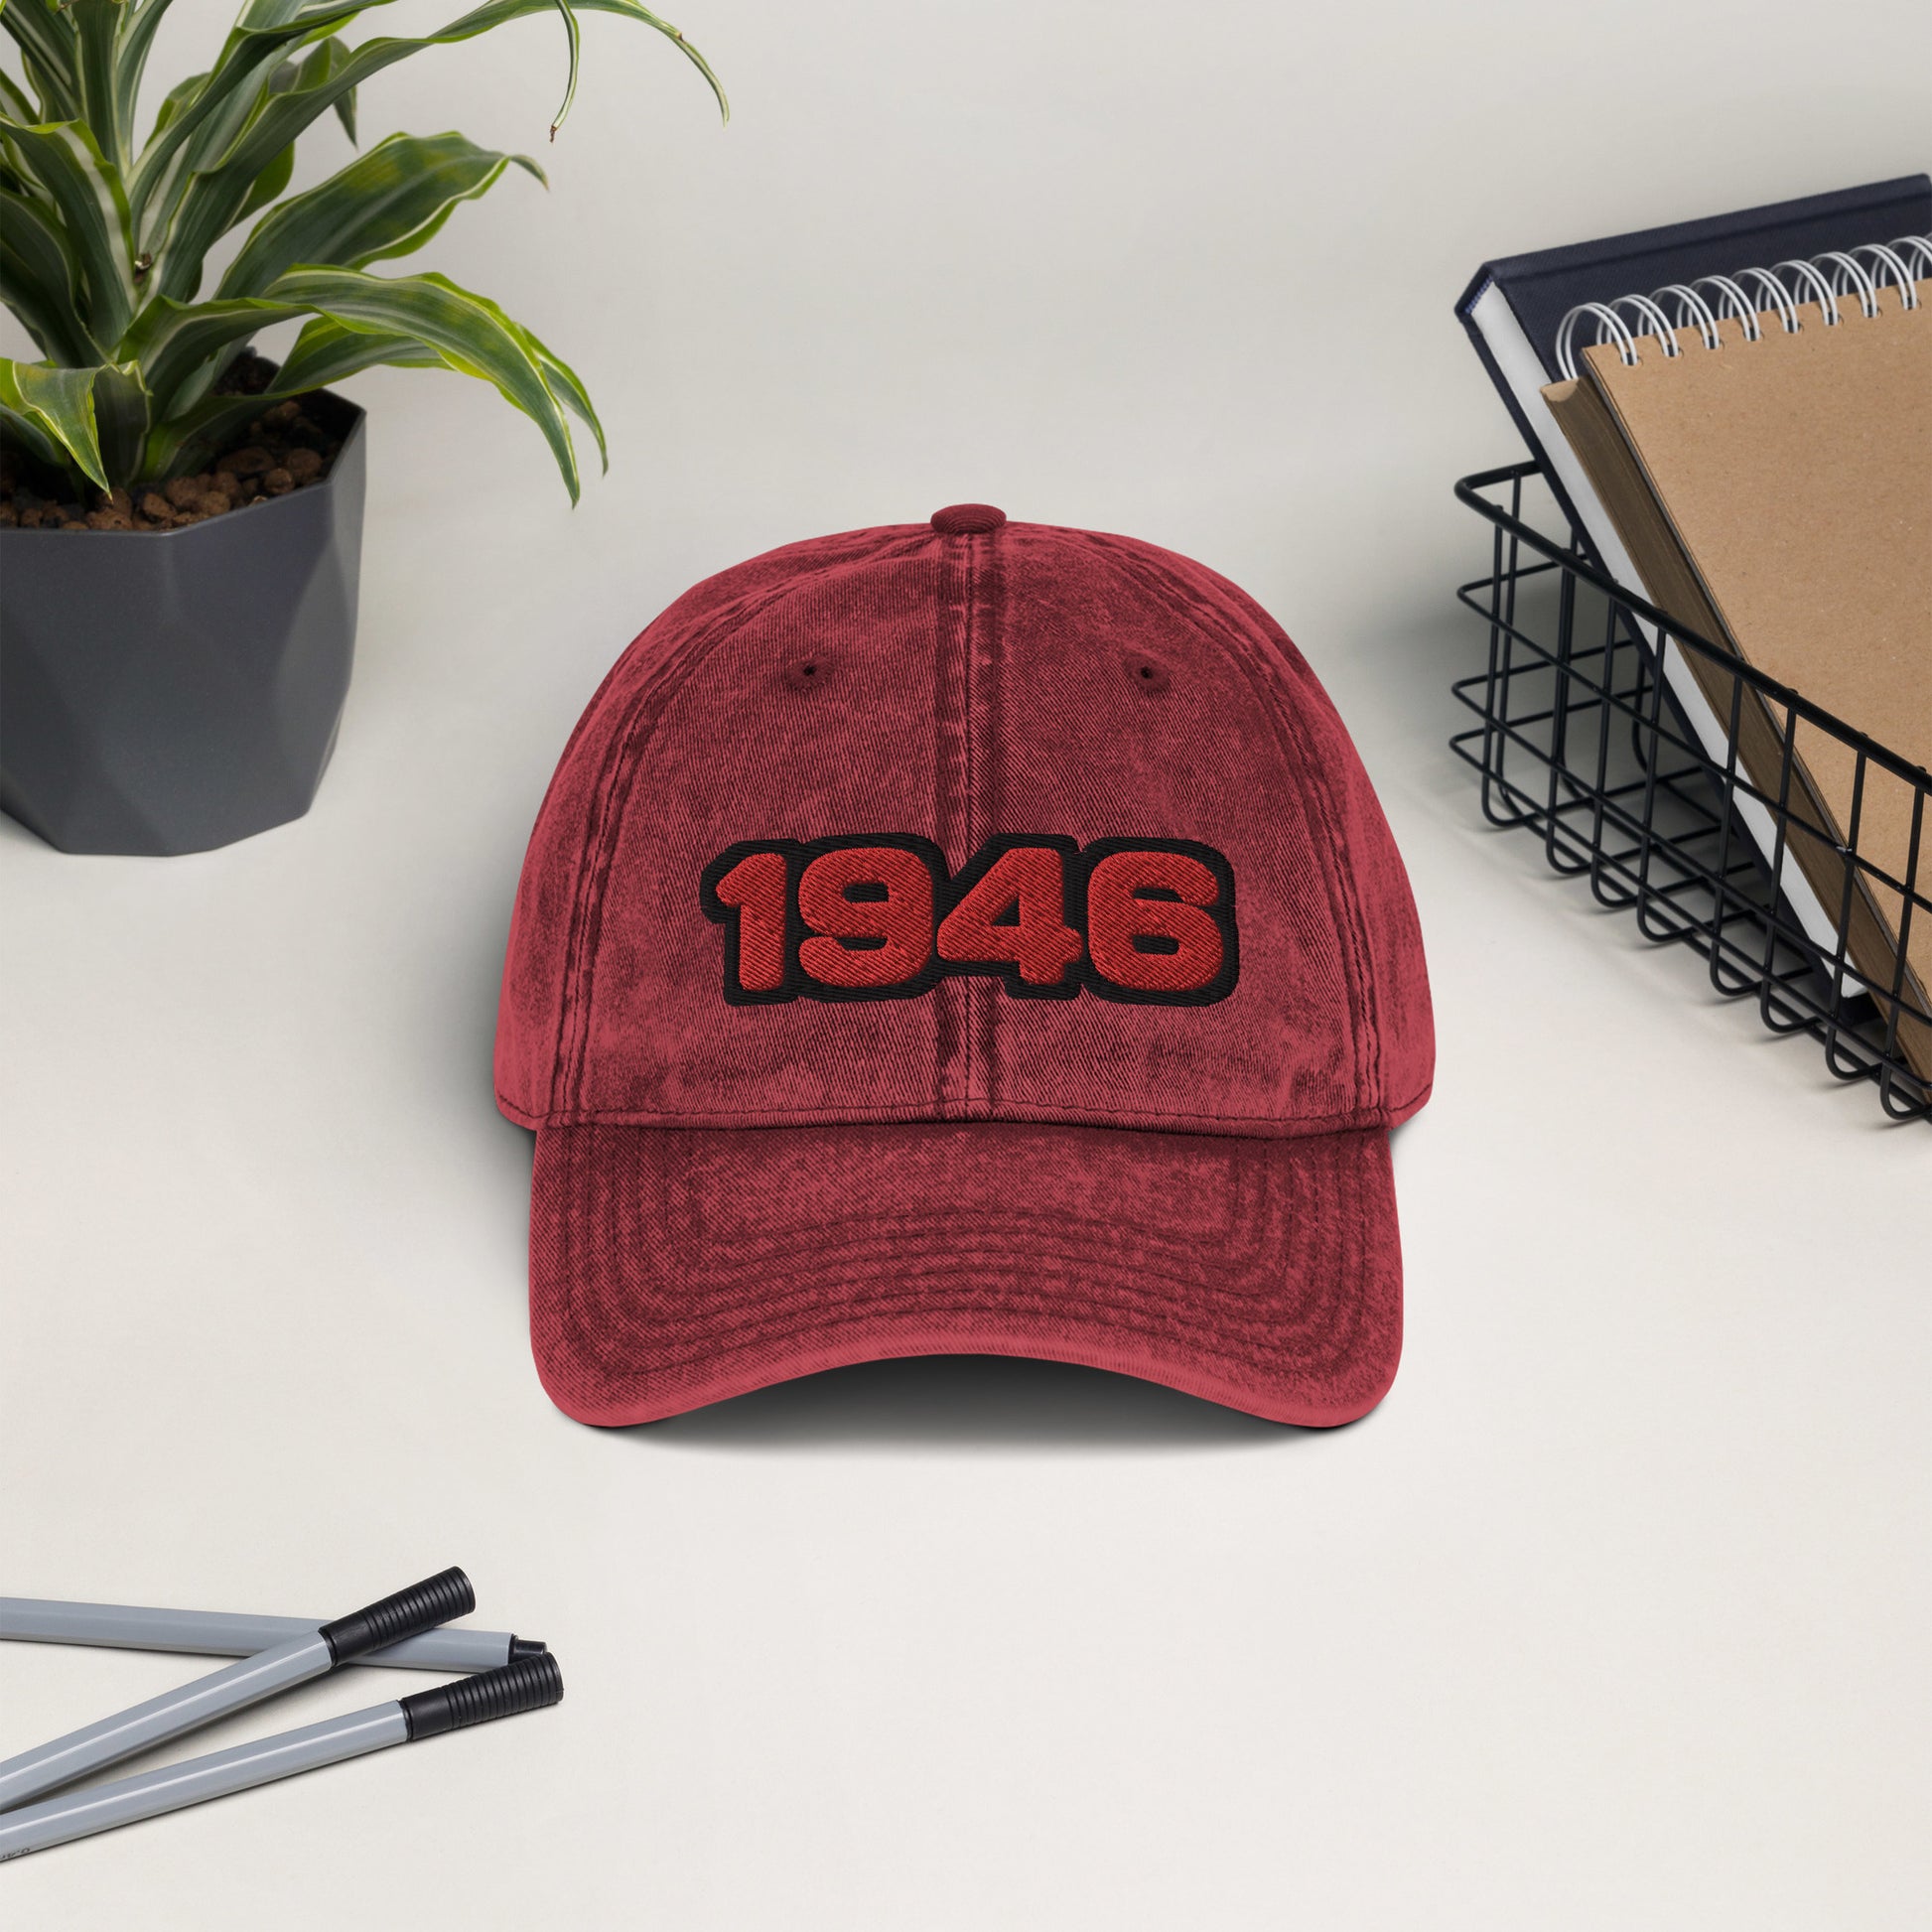 1946 hat / San Francisco hat / 49ers hat / Vintage Cotton Twill Cap